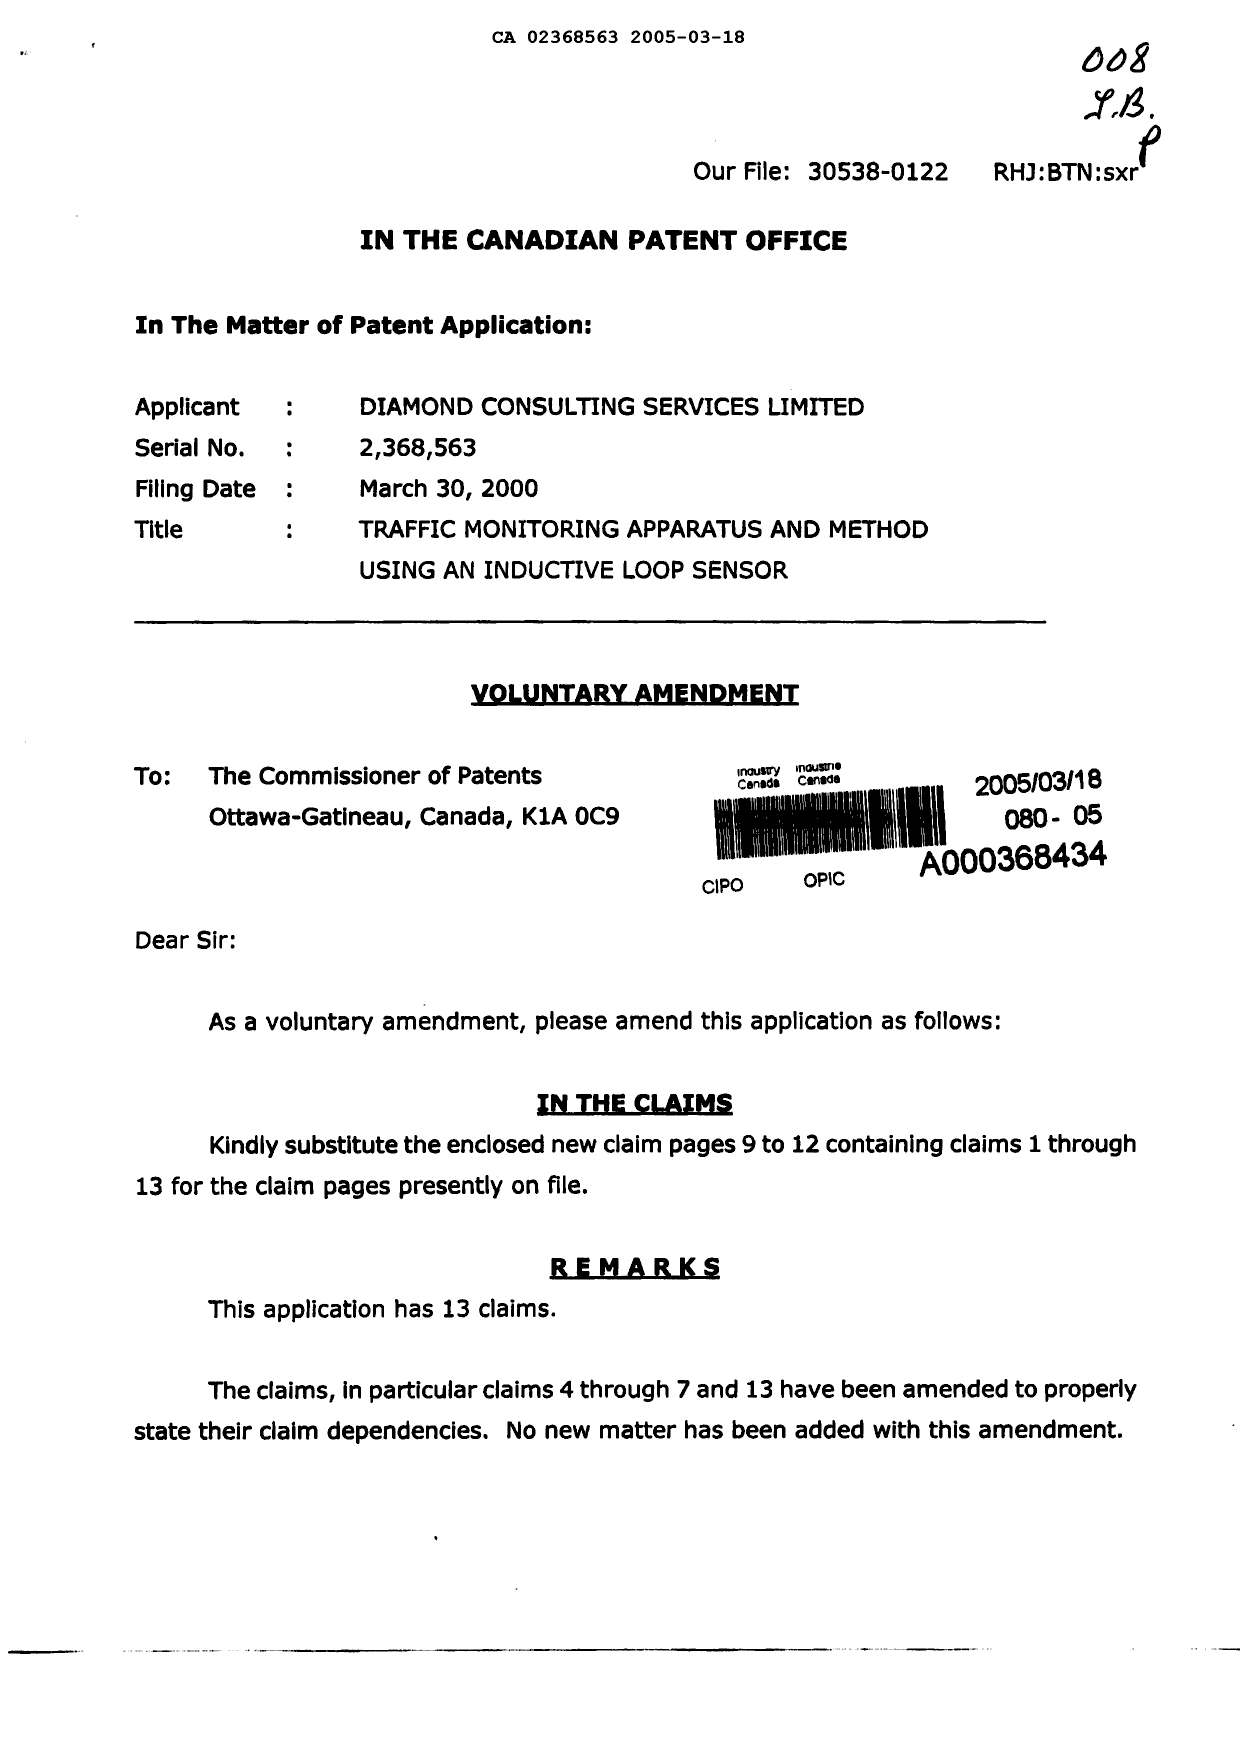 Document de brevet canadien 2368563. Poursuite-Amendment 20050318. Image 1 de 6